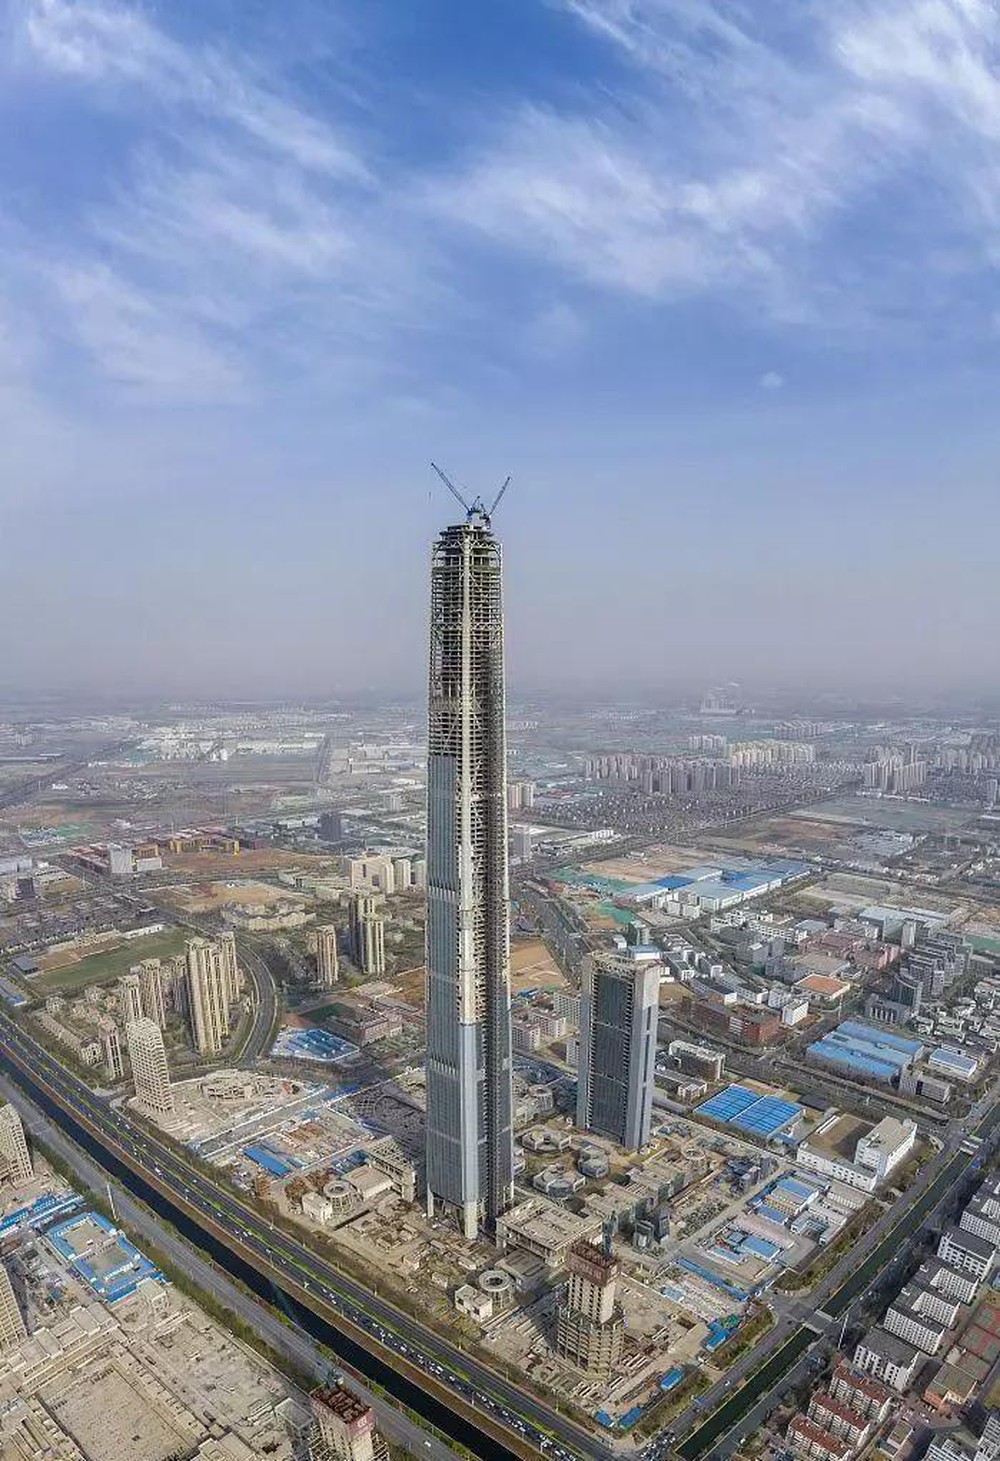 Được đầu tư 200 nghìn tỷ đồng, khởi công từ 2008, tòa nhà 117 tầng trở thành siêu dự án chết sừng sững vì nguyên nhân bất ngờ - Ảnh 6.